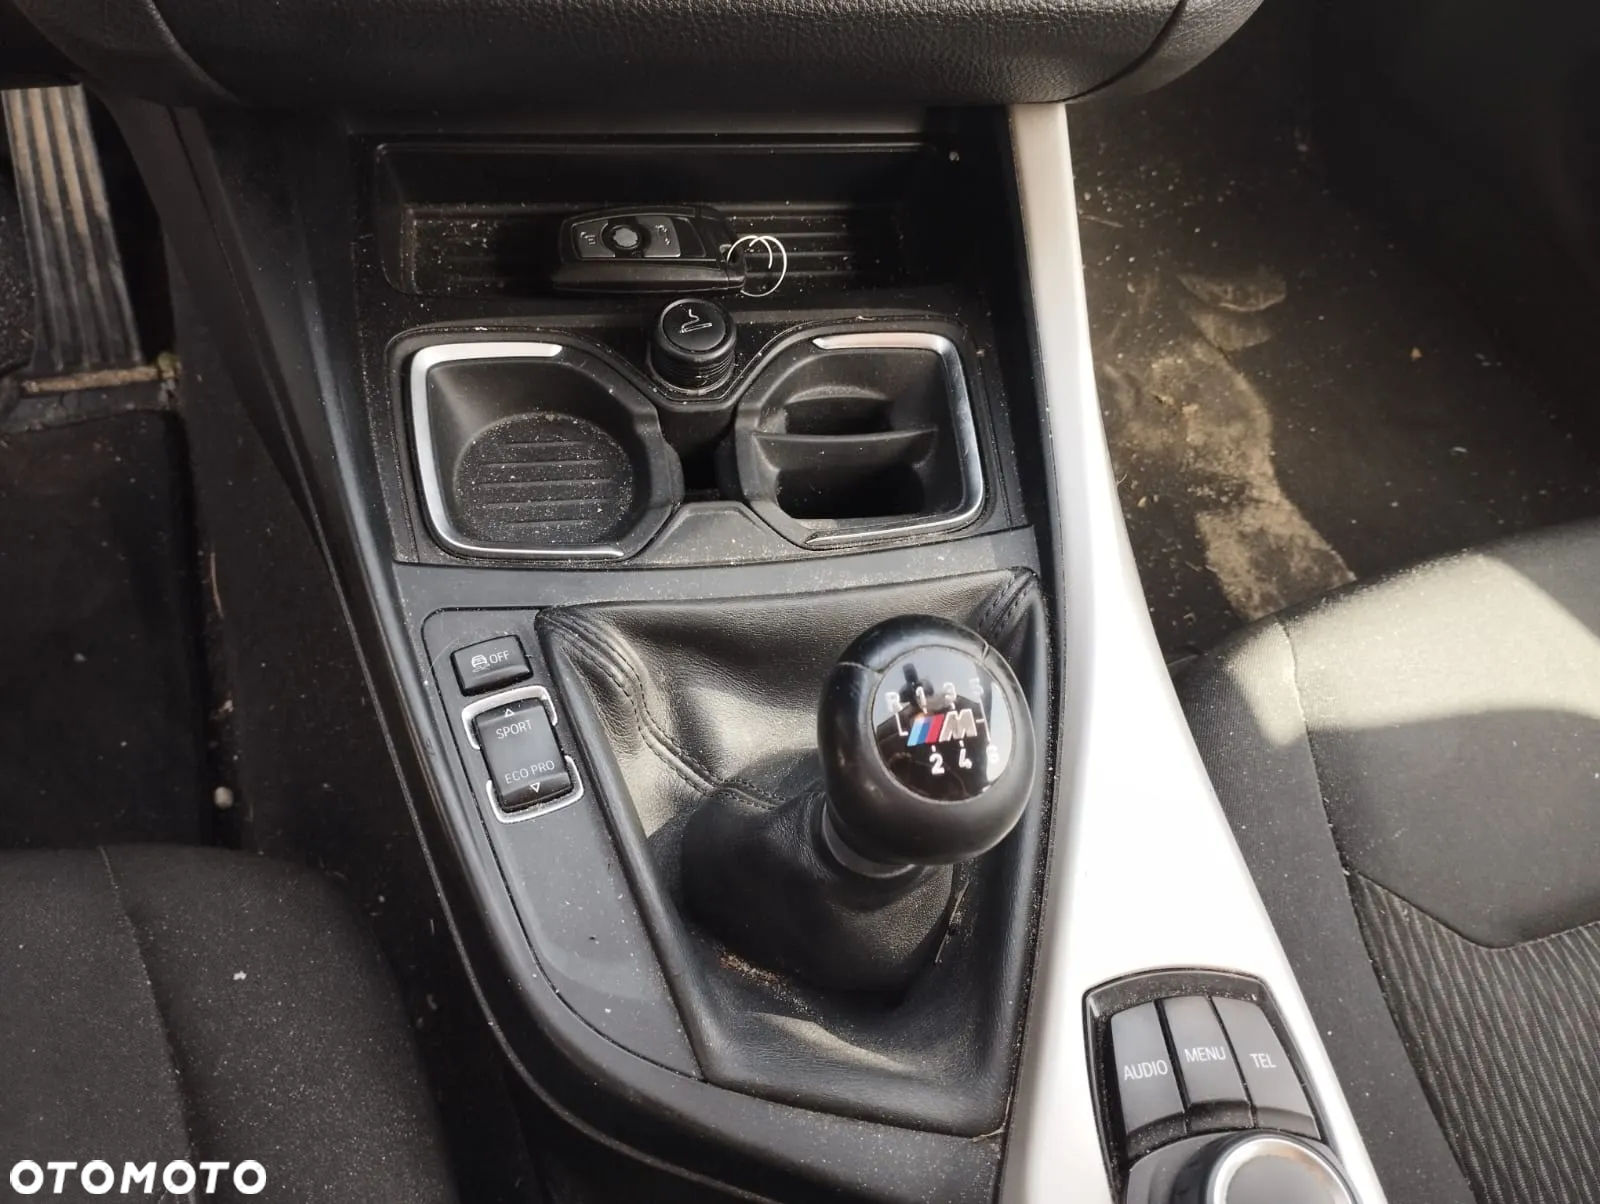 BMW Seria 1 118i - 7